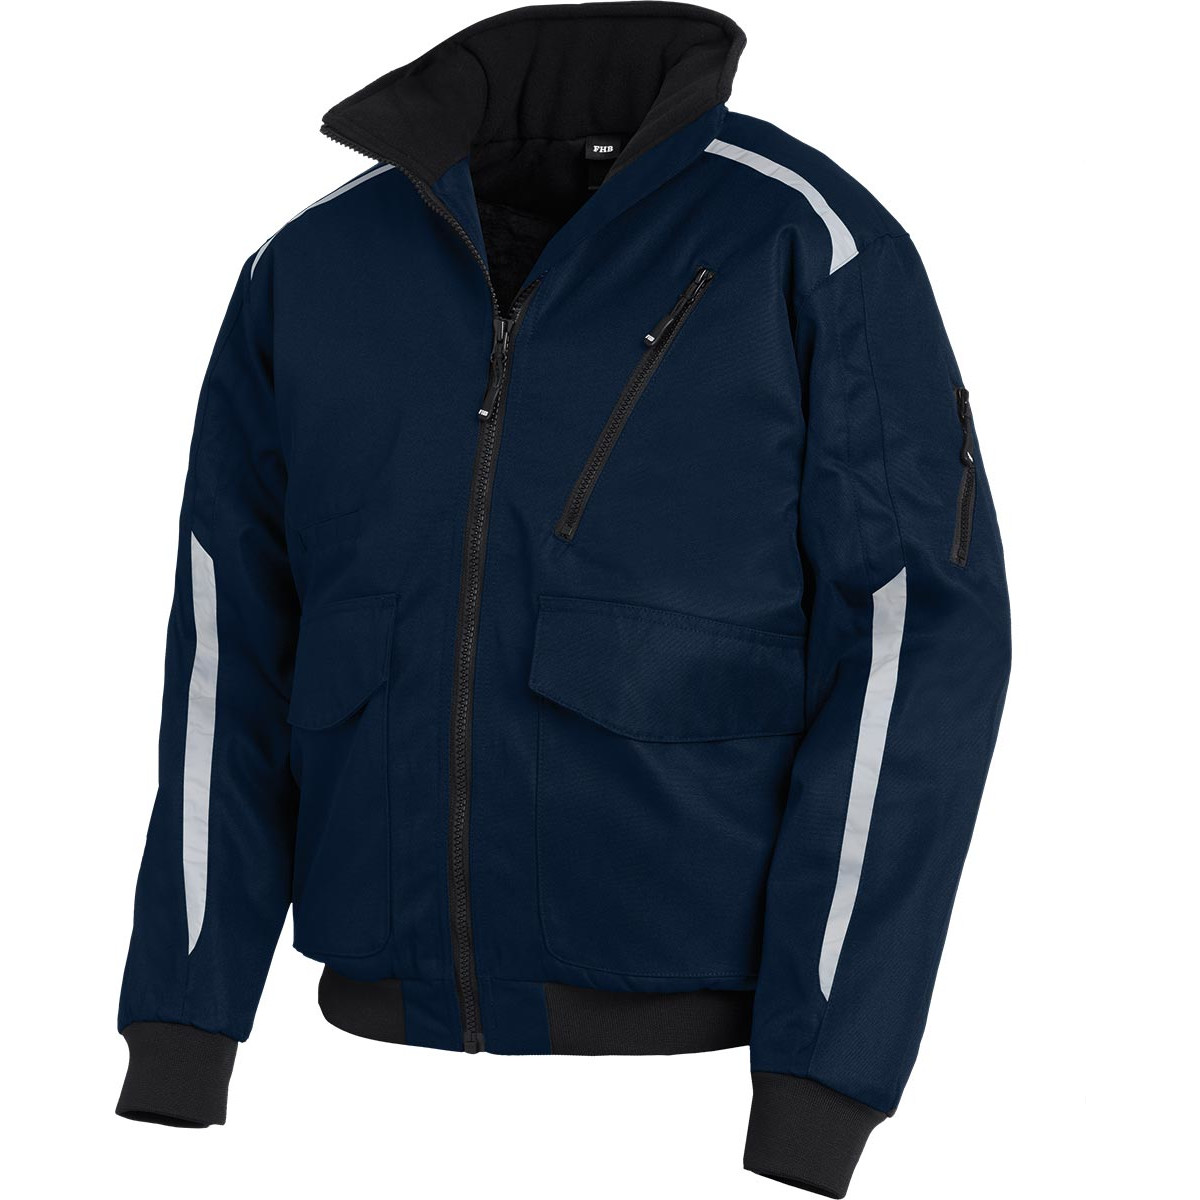 Navy Blau herren Winter mantel mit reflektoren Arbeit Bomber Jacke  Reflektierende Jacke